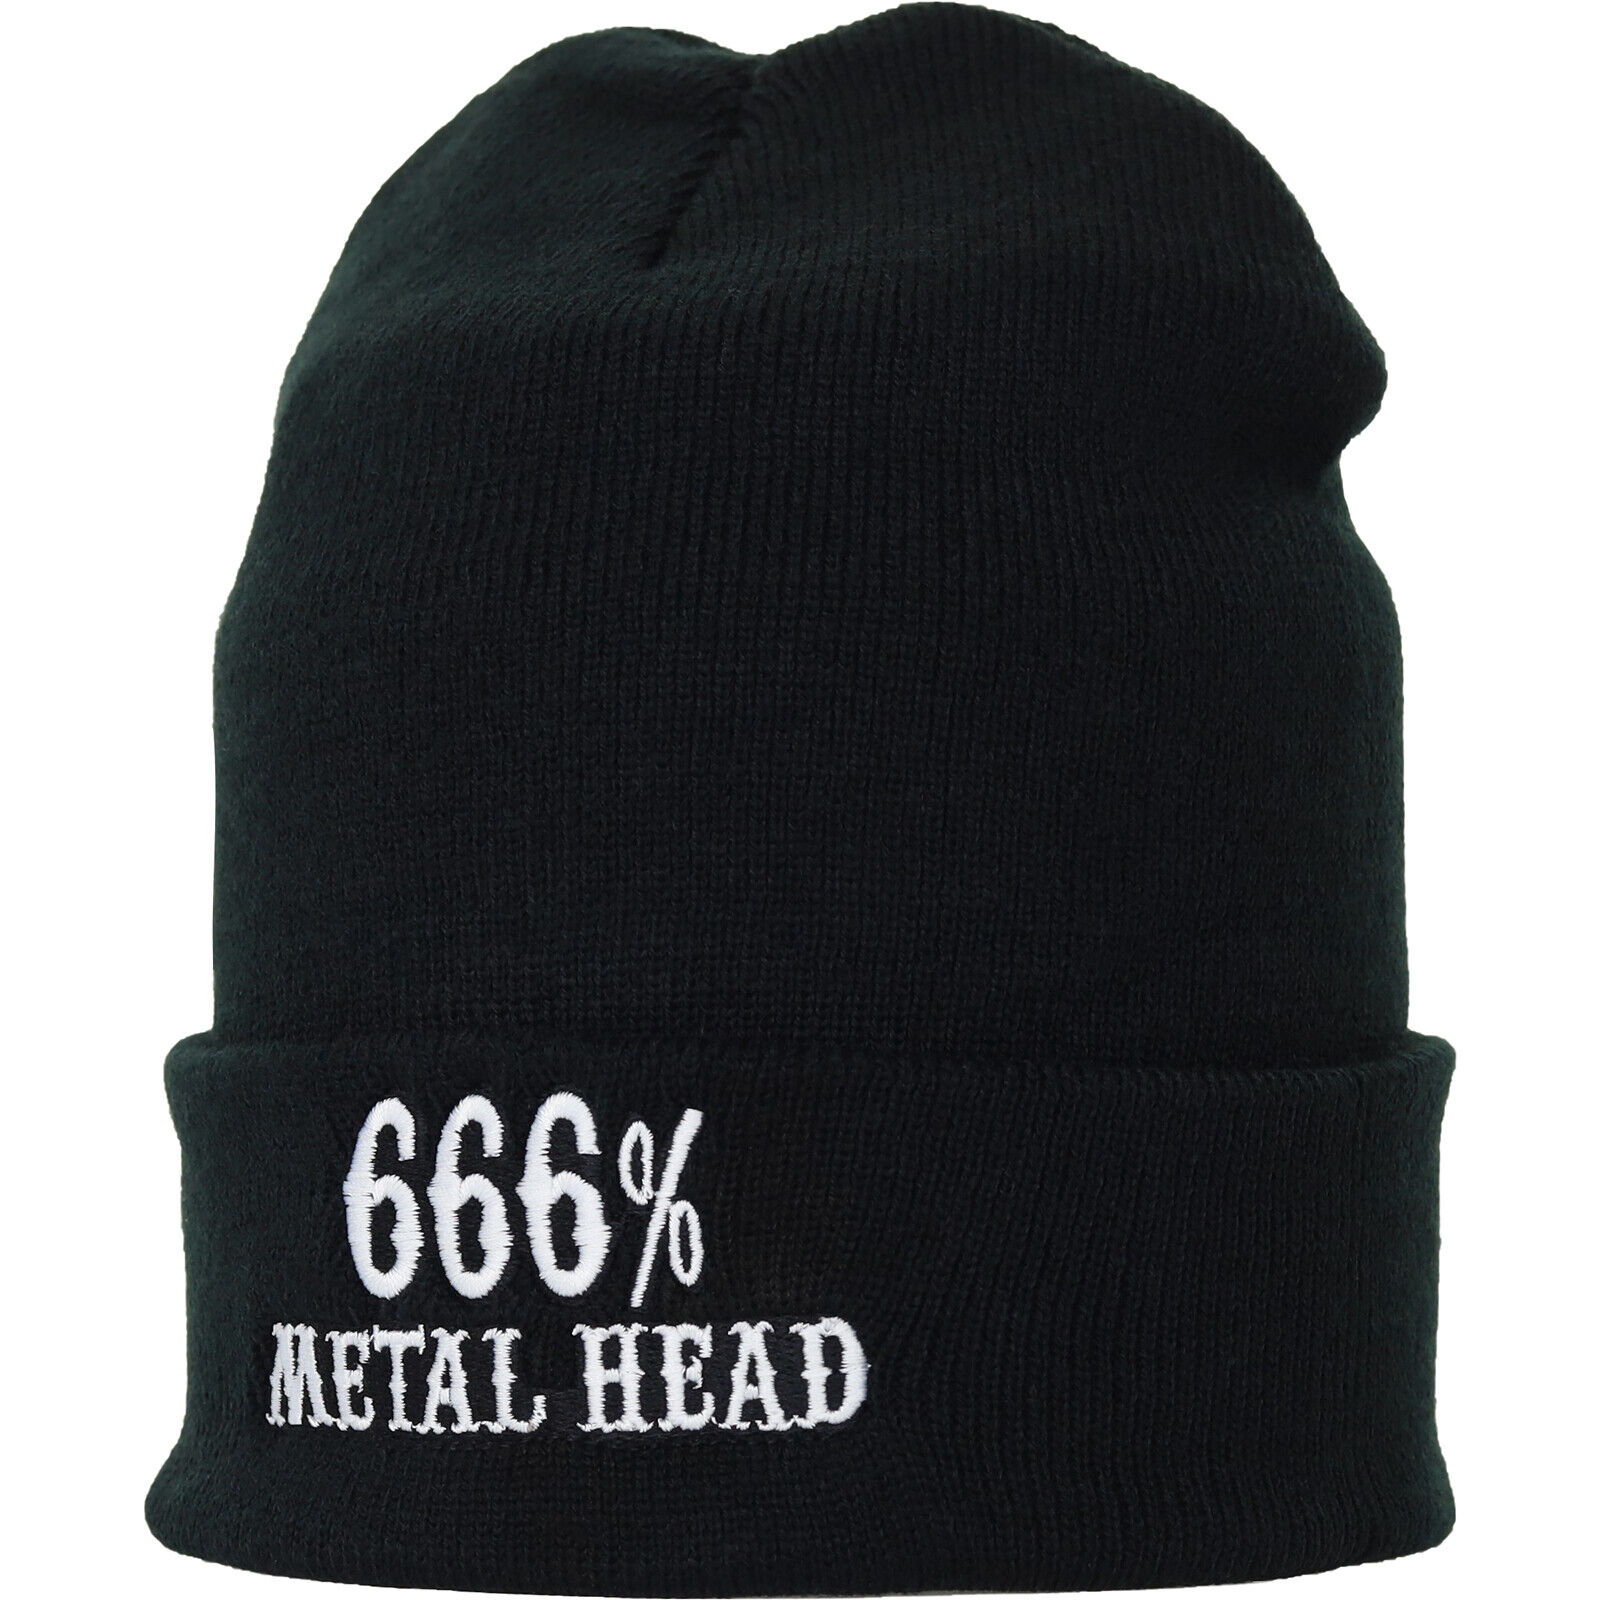 666% Metal Head Strickmütze Wollmütze Haube Beanie Winter Unisex Damen/Herren